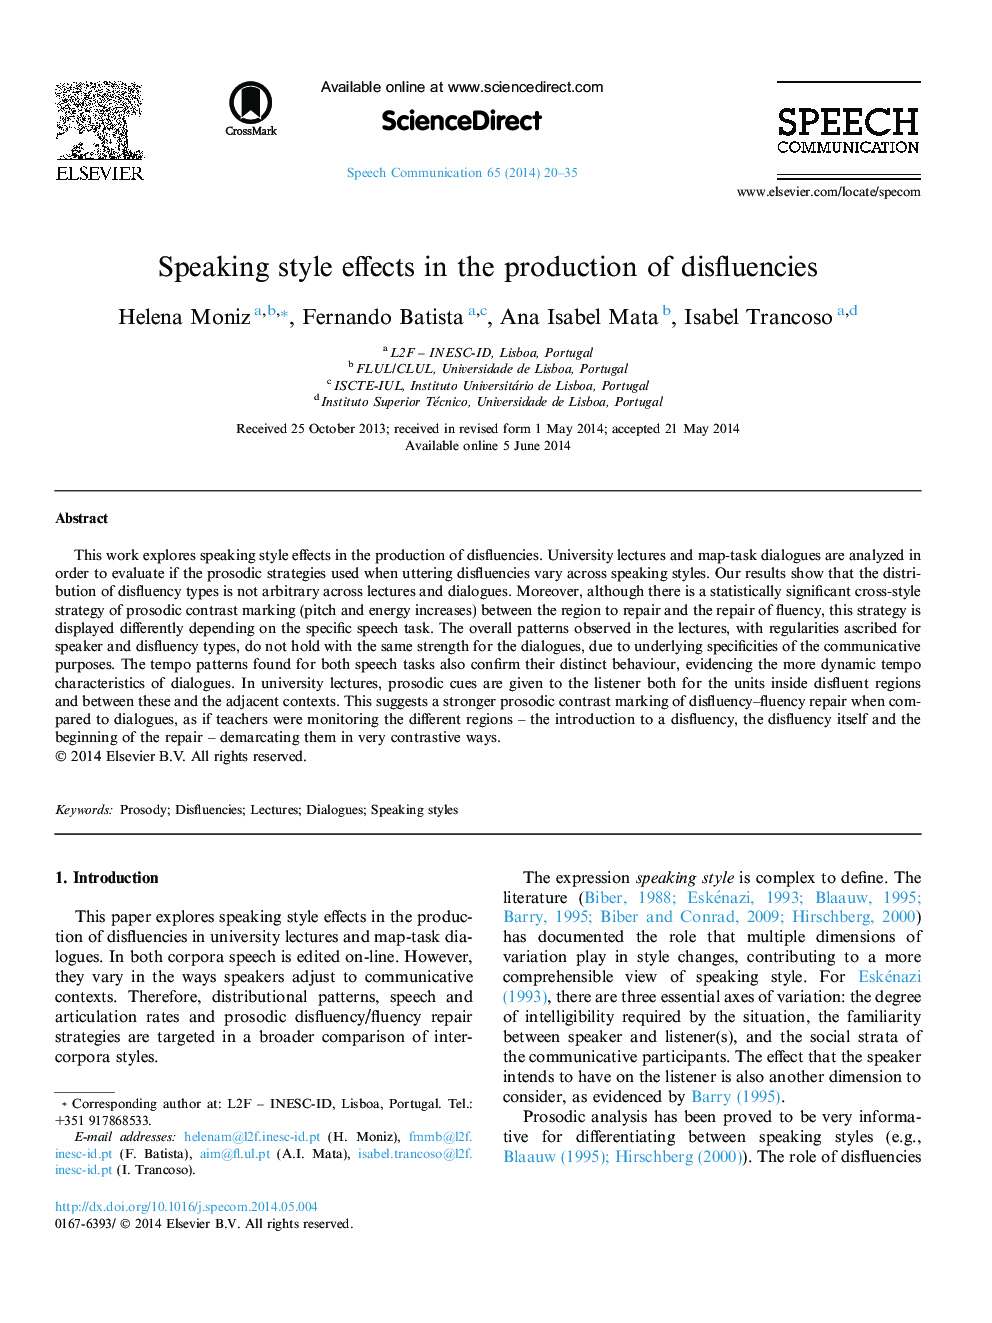 اثرات سبک سخنرانی در تولید اختلافات 